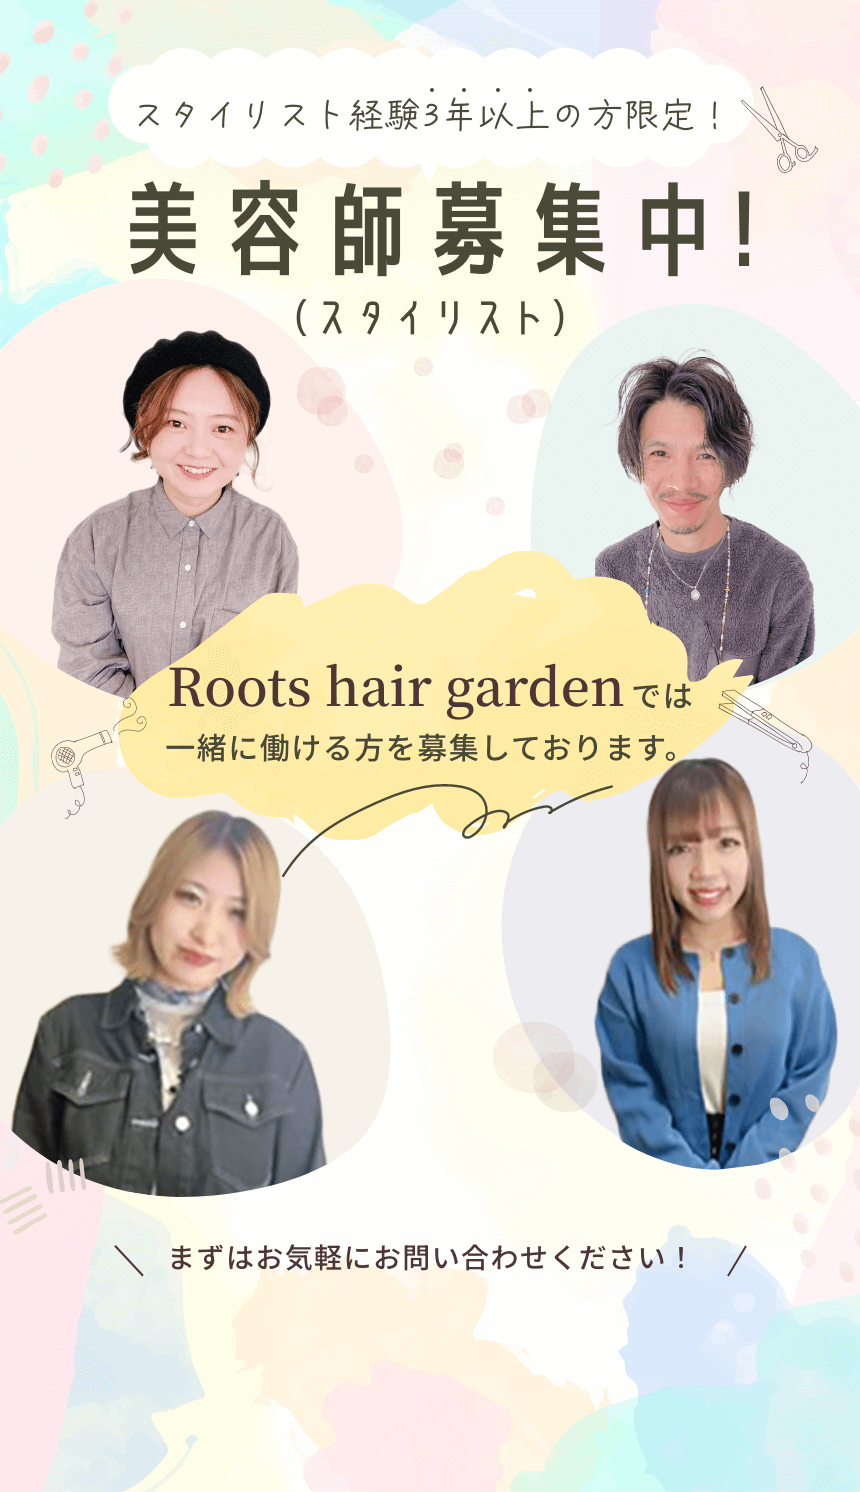 スタイリスト経験3年以上の方限定! 美容師募集中！(スタイリスト) Roots hair garden では一緒に働ける方を募集しております。 まずはお気軽にお問い合わせください！